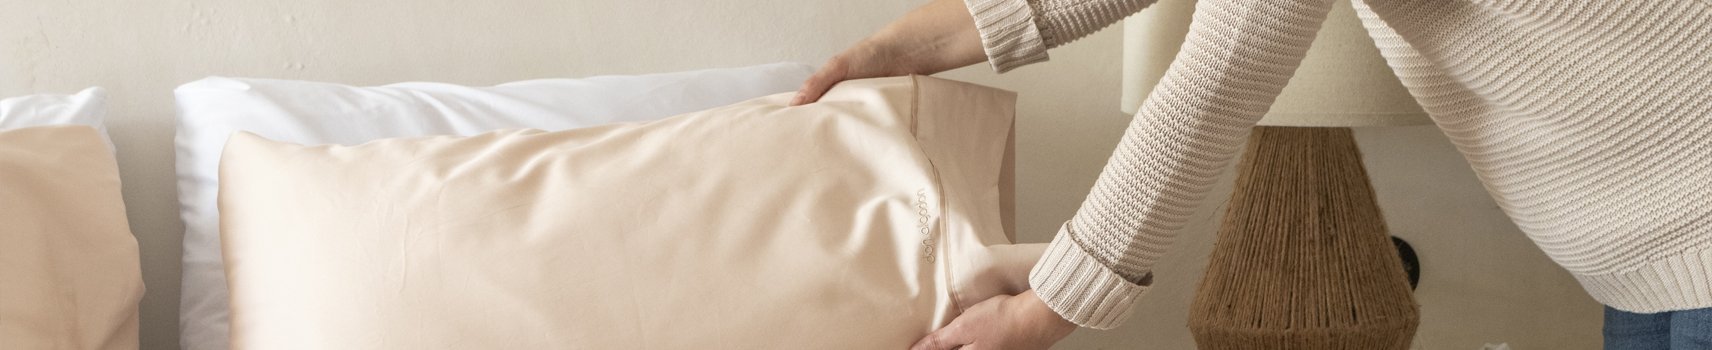 La mejor ropa de cama para tus habitaciones | Don Algodón